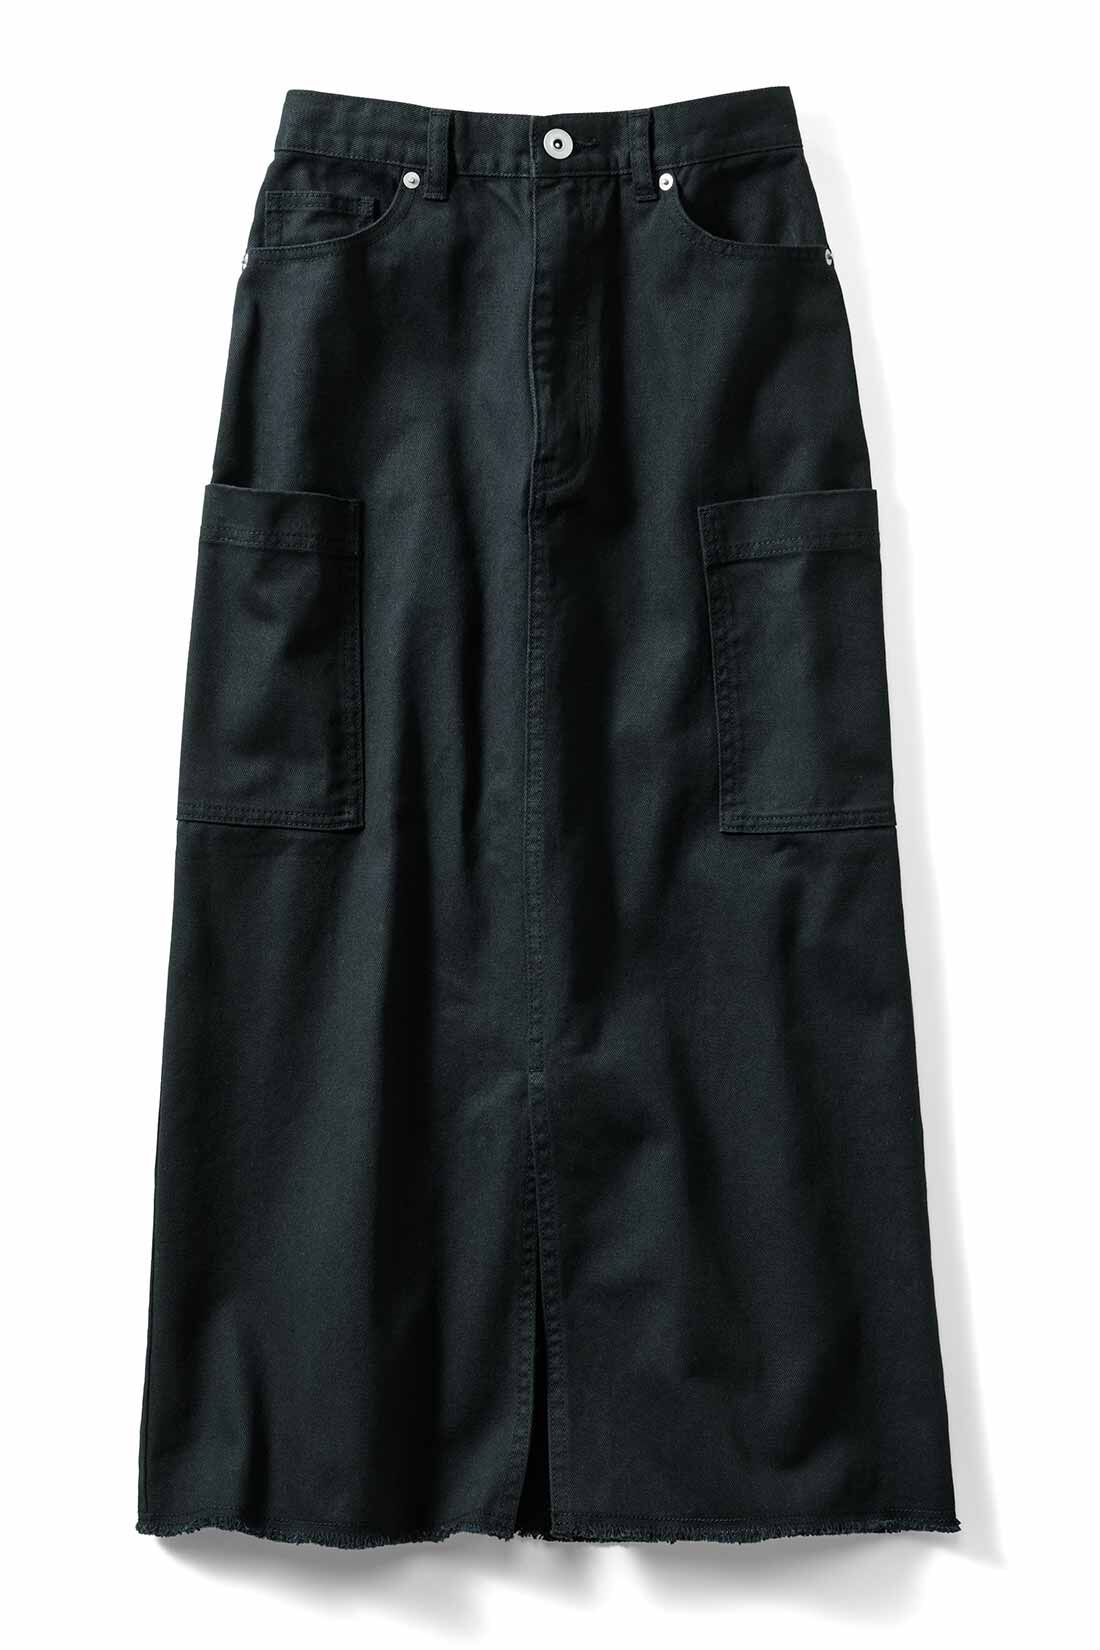 Real Stock|IEDIT[イディット]　かっこいいのにどこか女っぽい こだわりを詰め込んだIラインカーゴスカート〈ブラック〉|〈ブラック〉